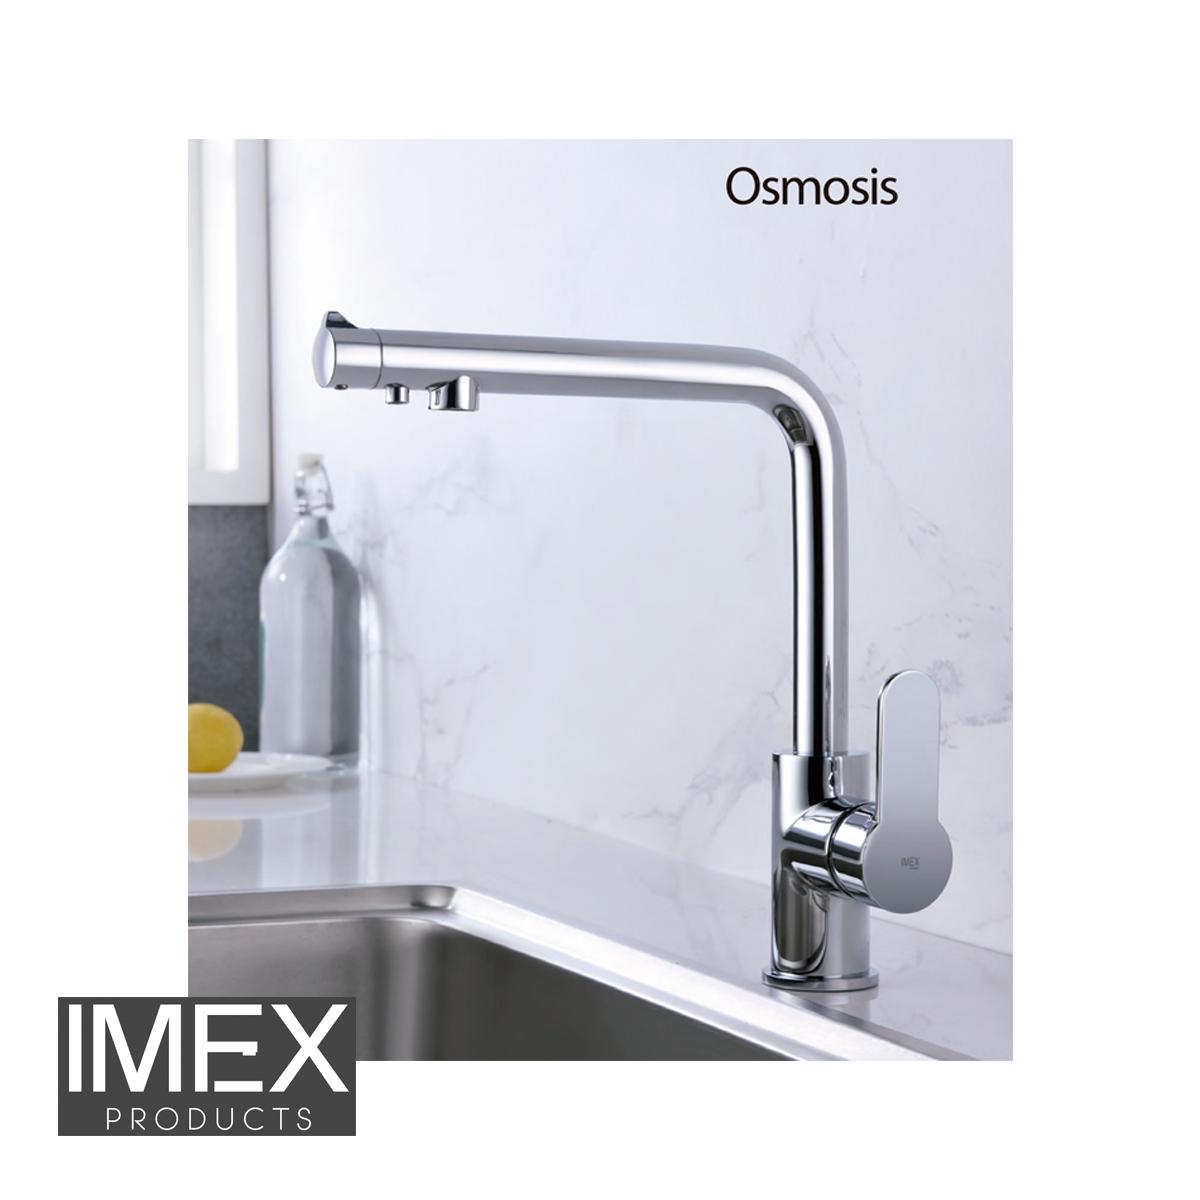 Grifo fregadero osmosis 3 vías Montecarlo IMEX.